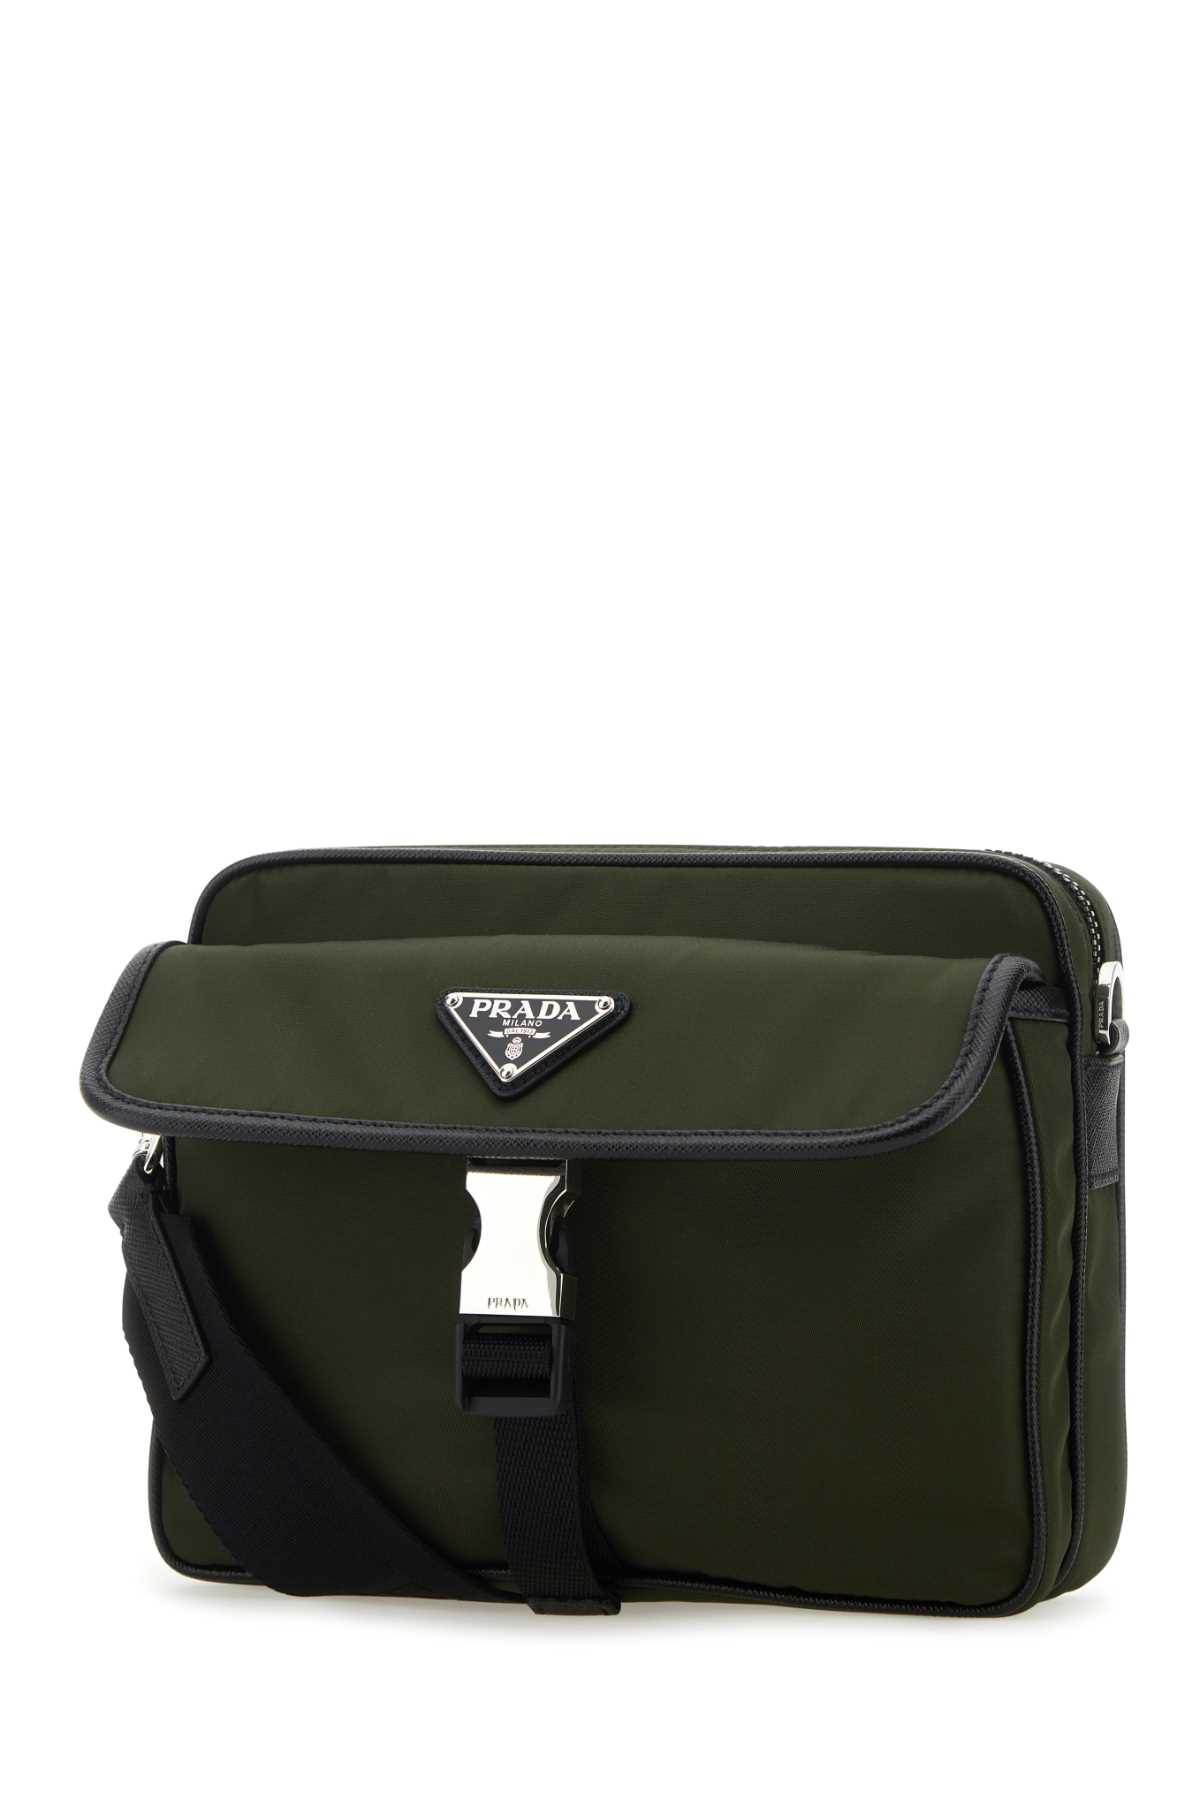 Shop Prada Army Green Nylon Crossbody Bag In F0244